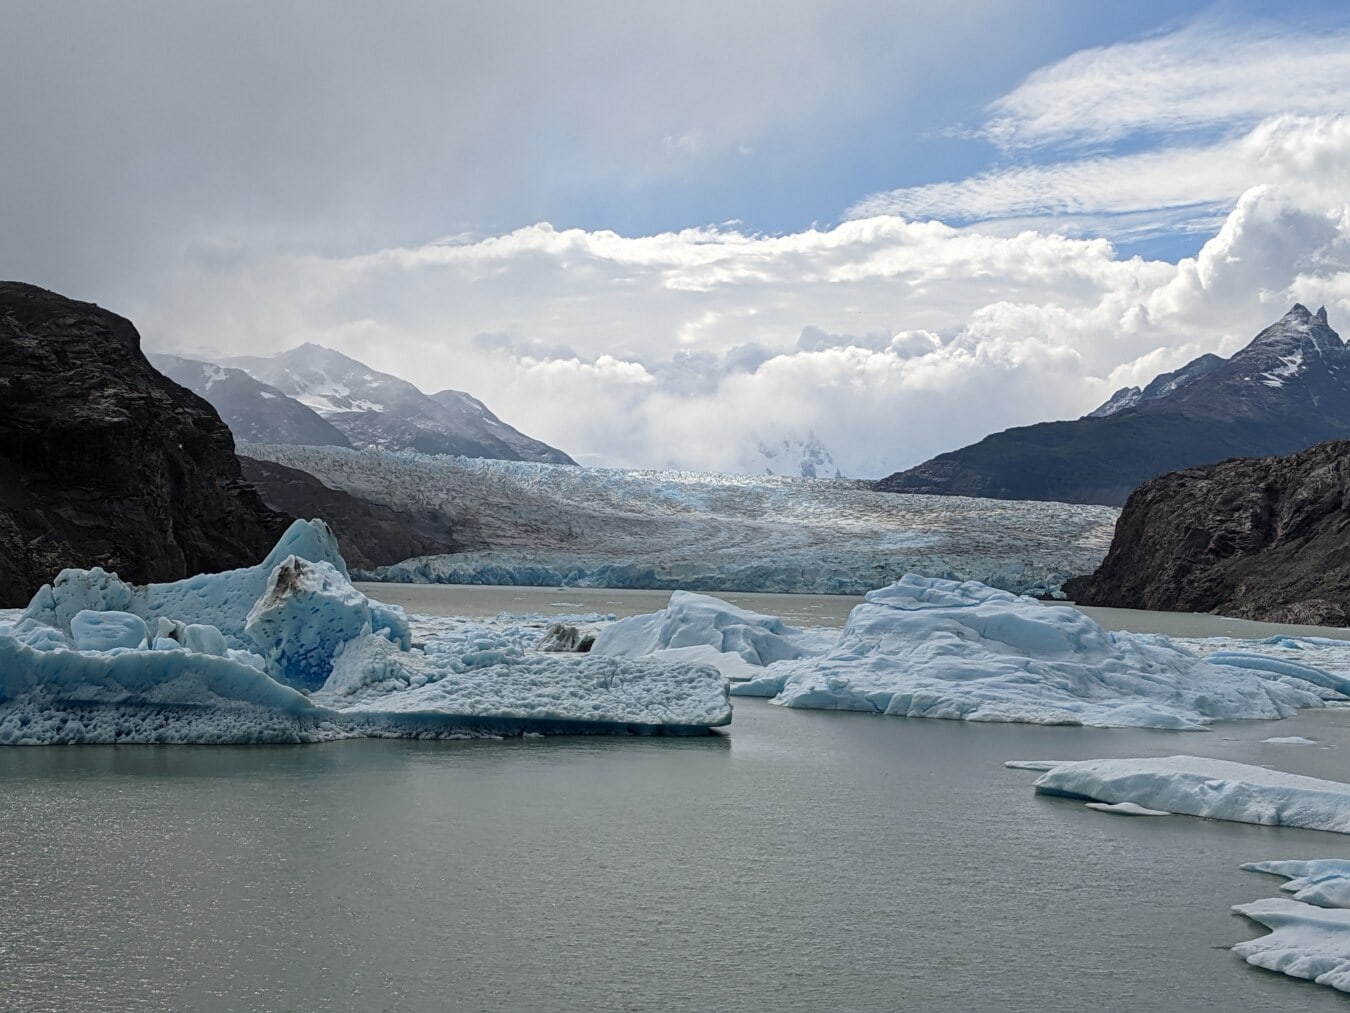 Glacier, flottant, iceberg, lac, montagnes, eau, neige, glace, paysage, montagne